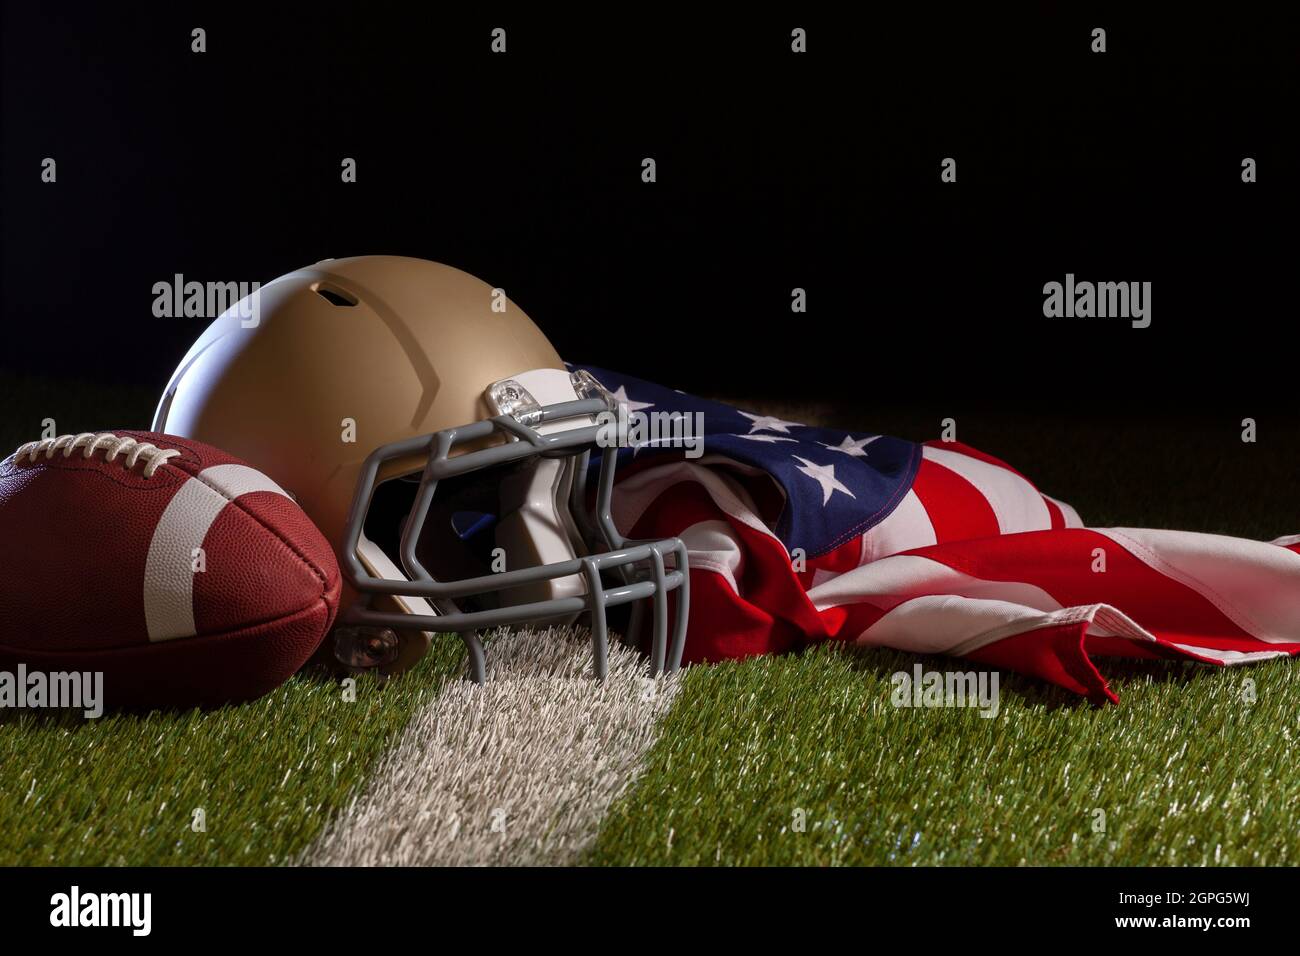 Vista en ángulo bajo de un balón de fútbol, casco y bandera estadounidense en un campo de hierba con rayas y fondo oscuro Foto de stock